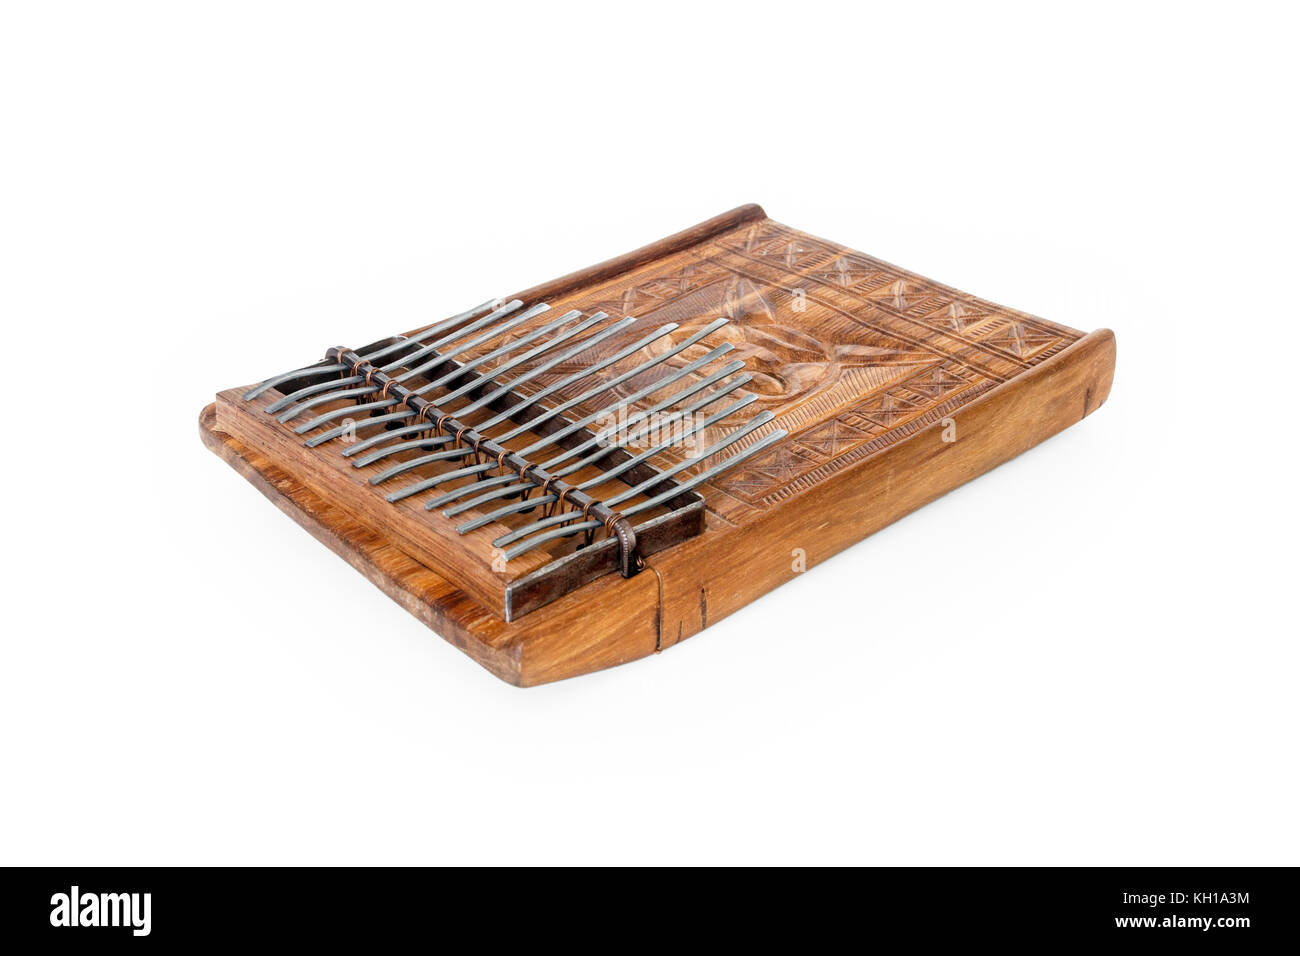 Traditionelle Mbira, ein Afrikanisches Musikinstrument, bestehend aus einem Resonanzboden aus Holz und Metall zinkige Tasten, aus Simbabwe Stockfoto